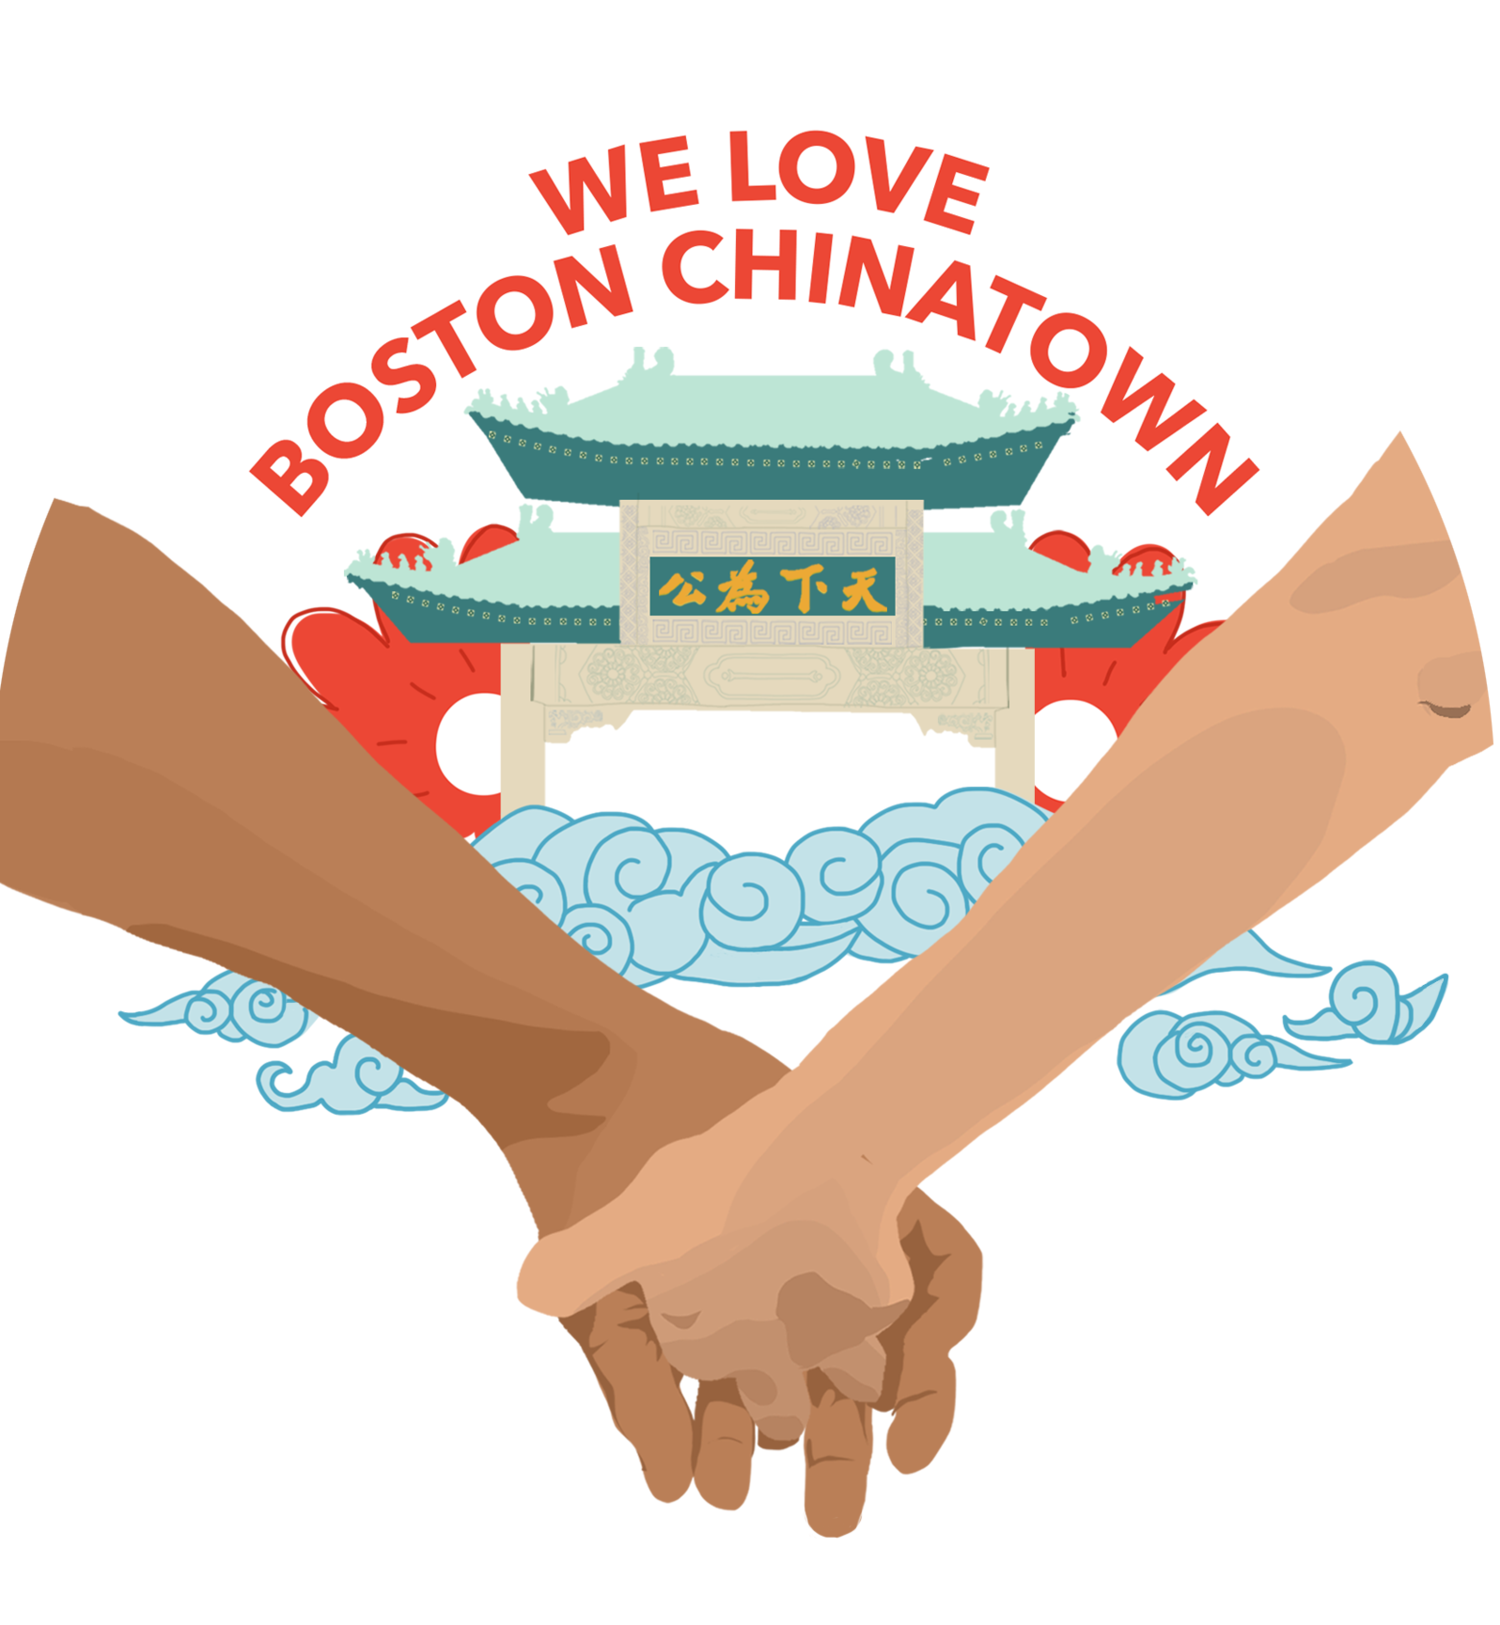 We Love Boston Chinatown